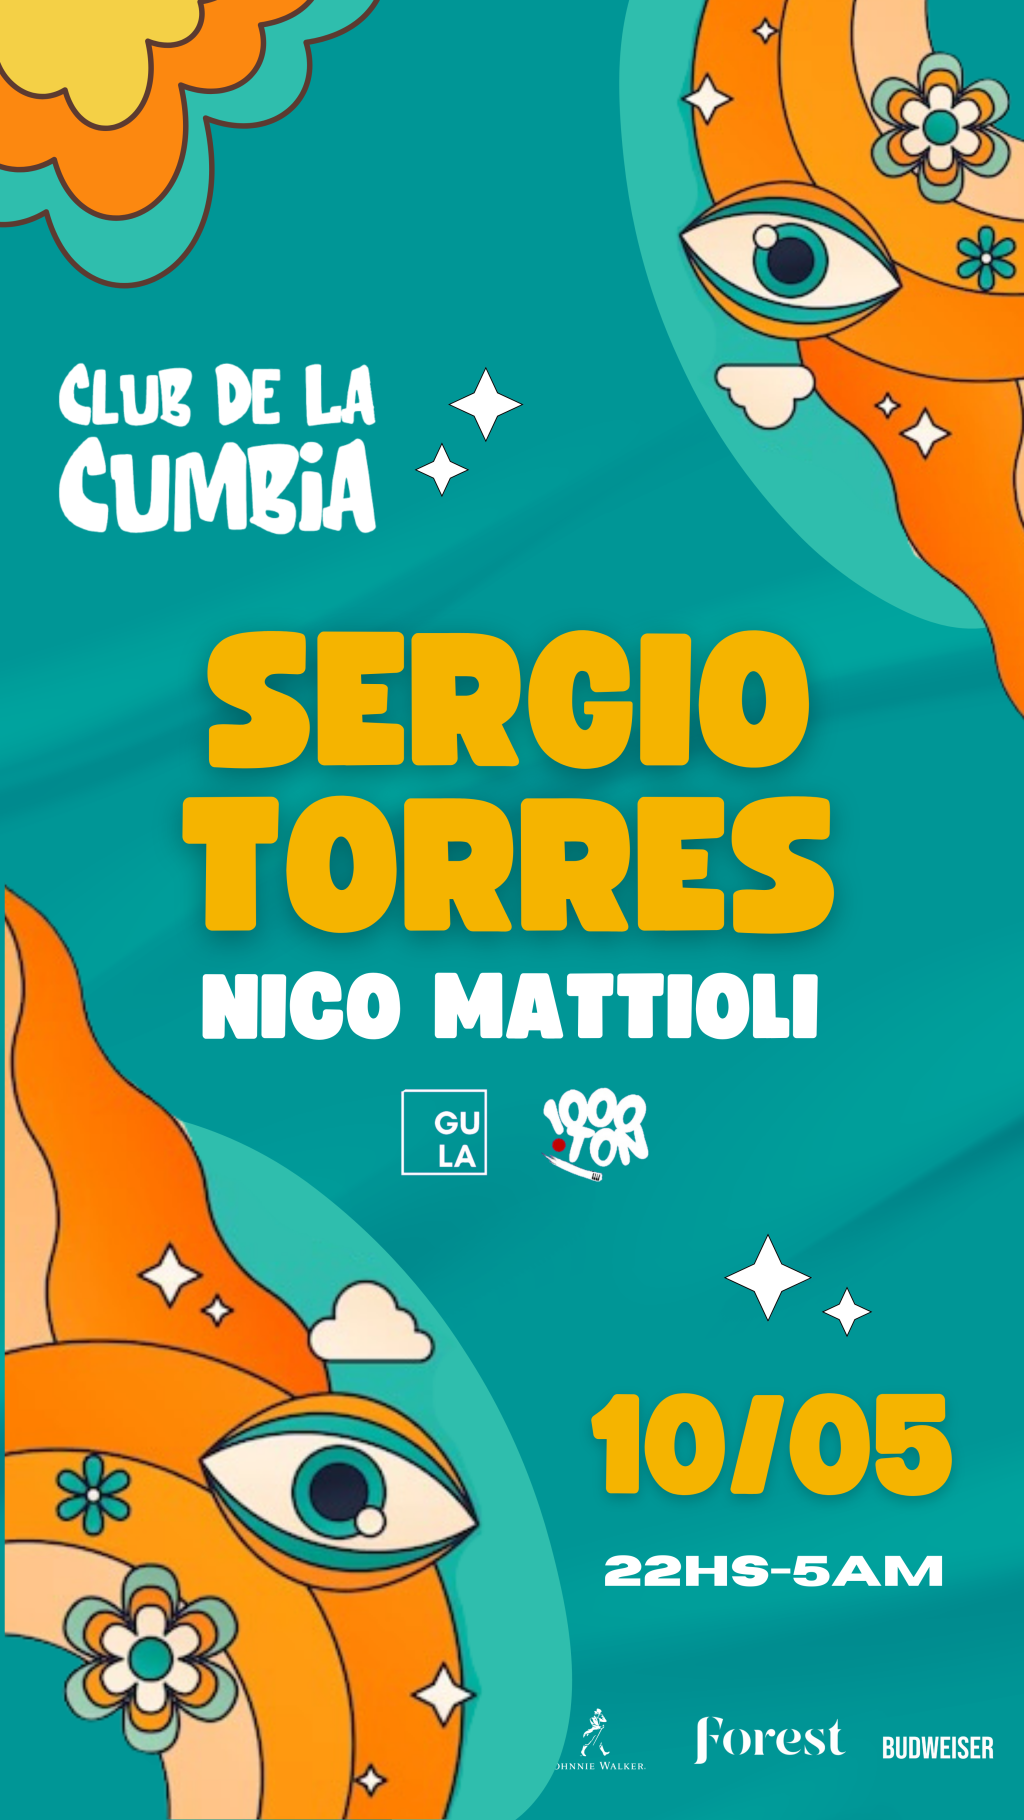 La Cumbia Vibra en Rosario: Sergio Torres y Nico Mattioli Encienden la Noche de Rosario